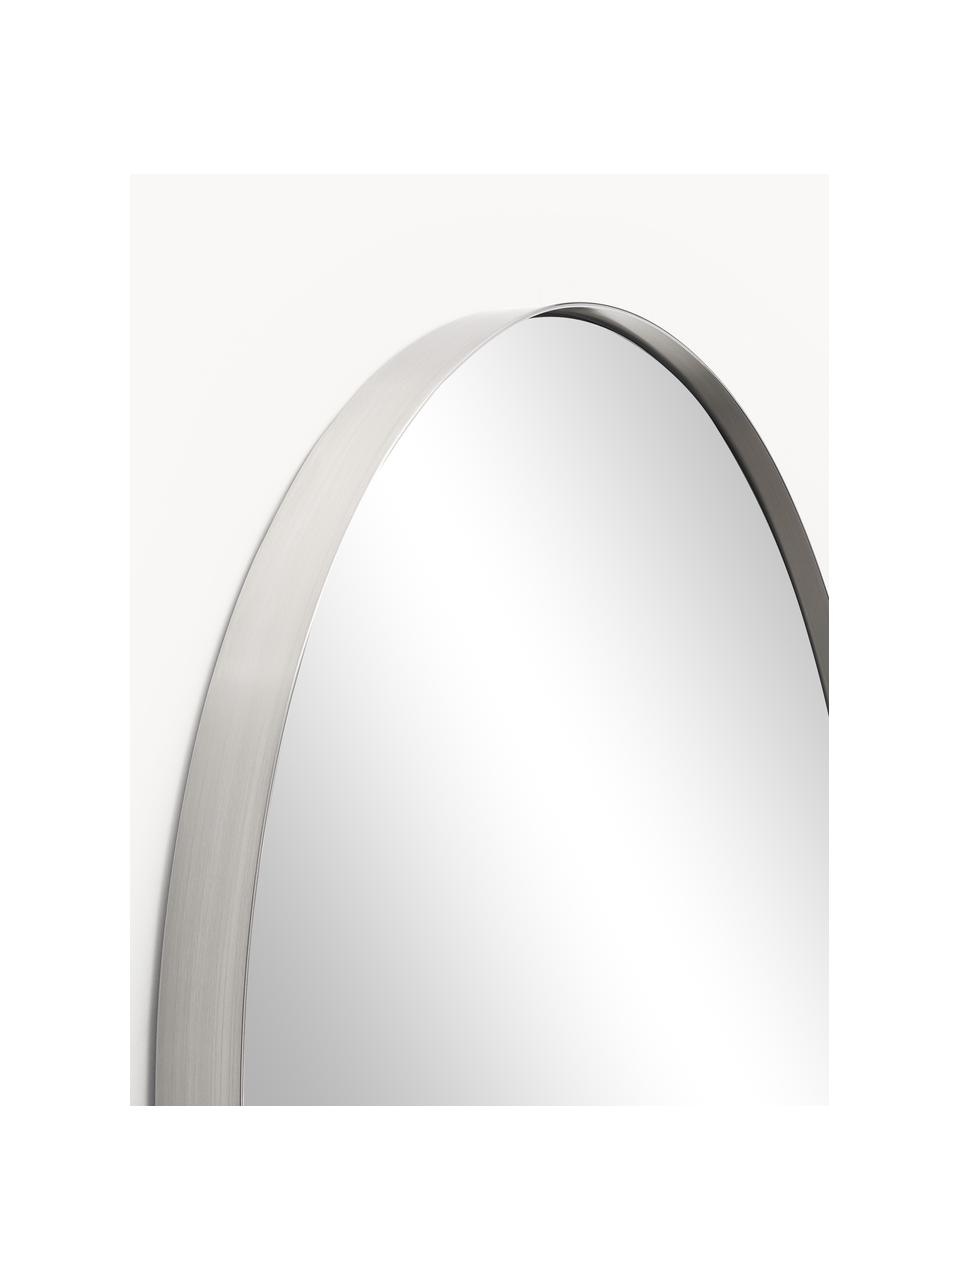 Runder Wandspiegel Lacie, Rahmen: Metall, beschichtet, Rückseite: Mitteldichte Holzfaserpla, Spiegelfläche: Spiegelglas, Silberfarben, Ø 55 cm